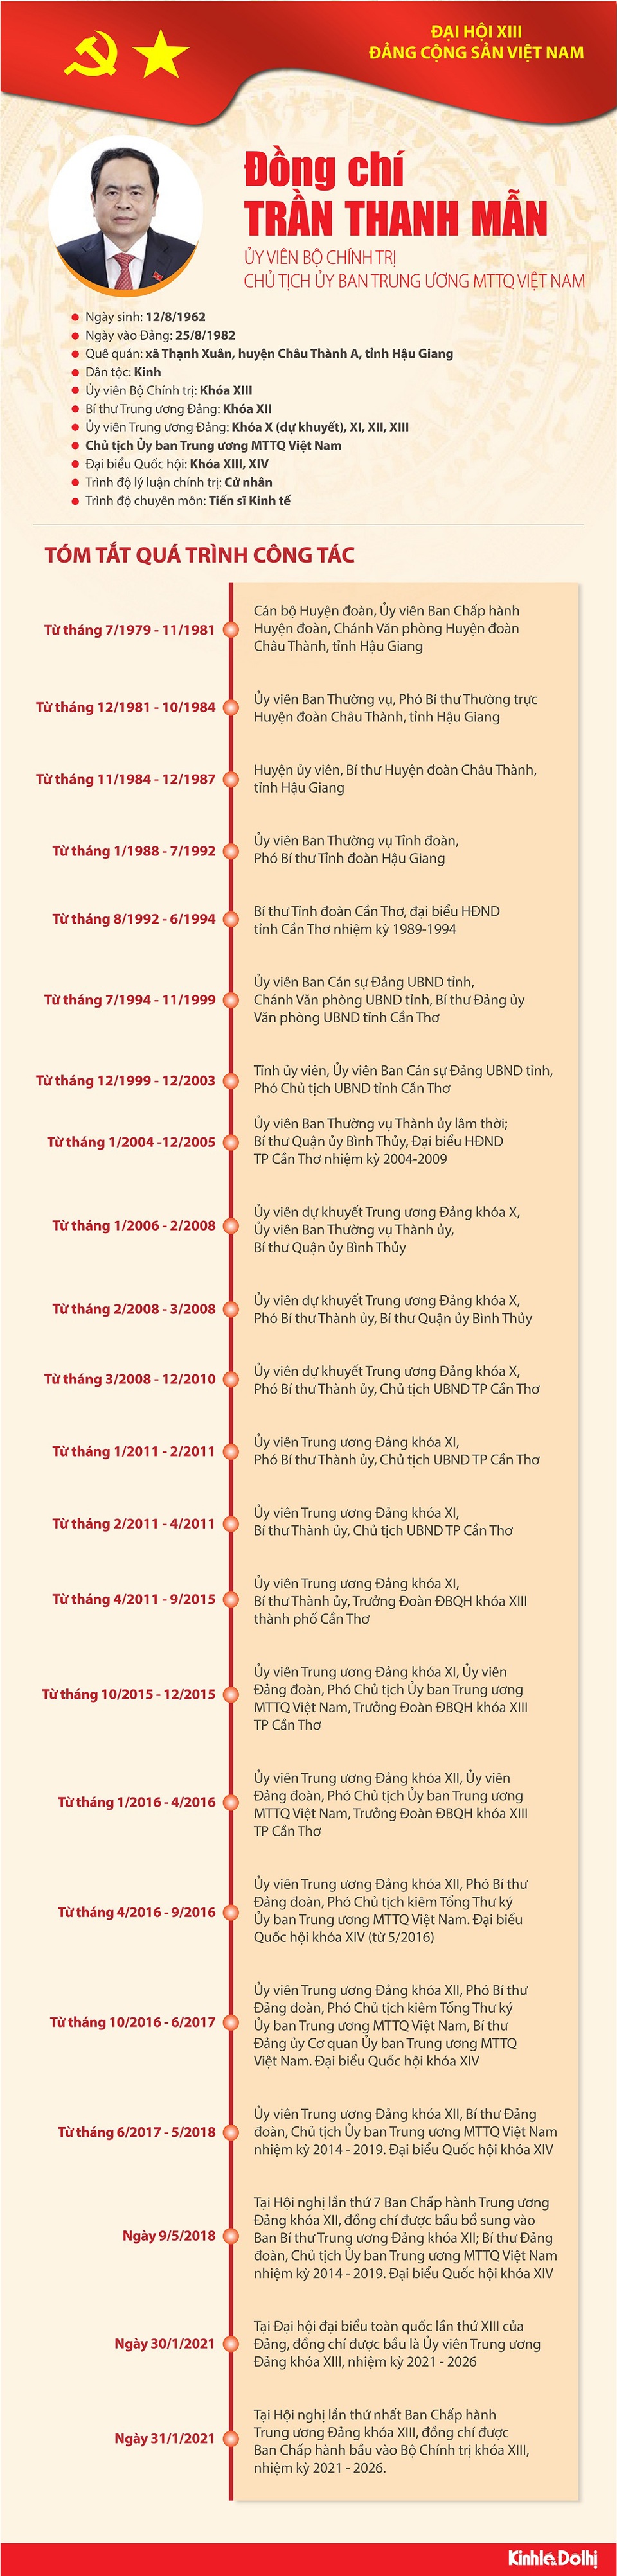 [Infographic] Quá trình công tác Ủy viên Bộ Chính trị Trần Thanh Mẫn - Ảnh 1